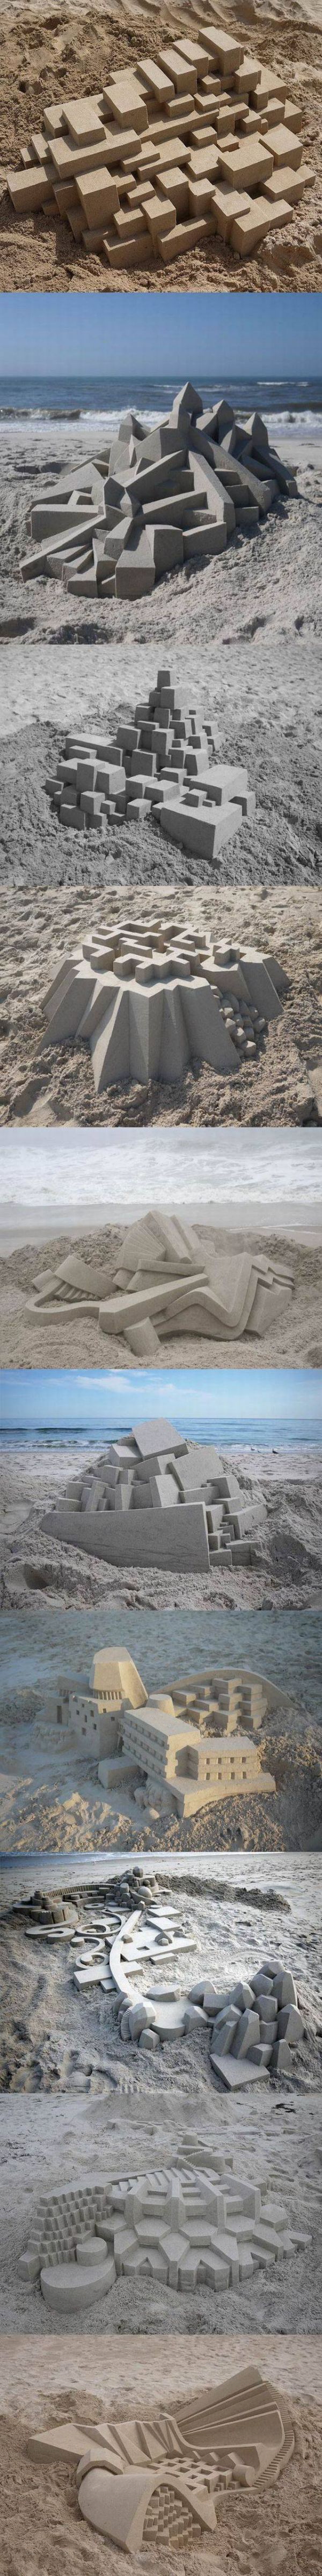 Die besten 100 Bilder in der Kategorie sand_kunst: Sand, Architektur, Formen, Kunst, Strand